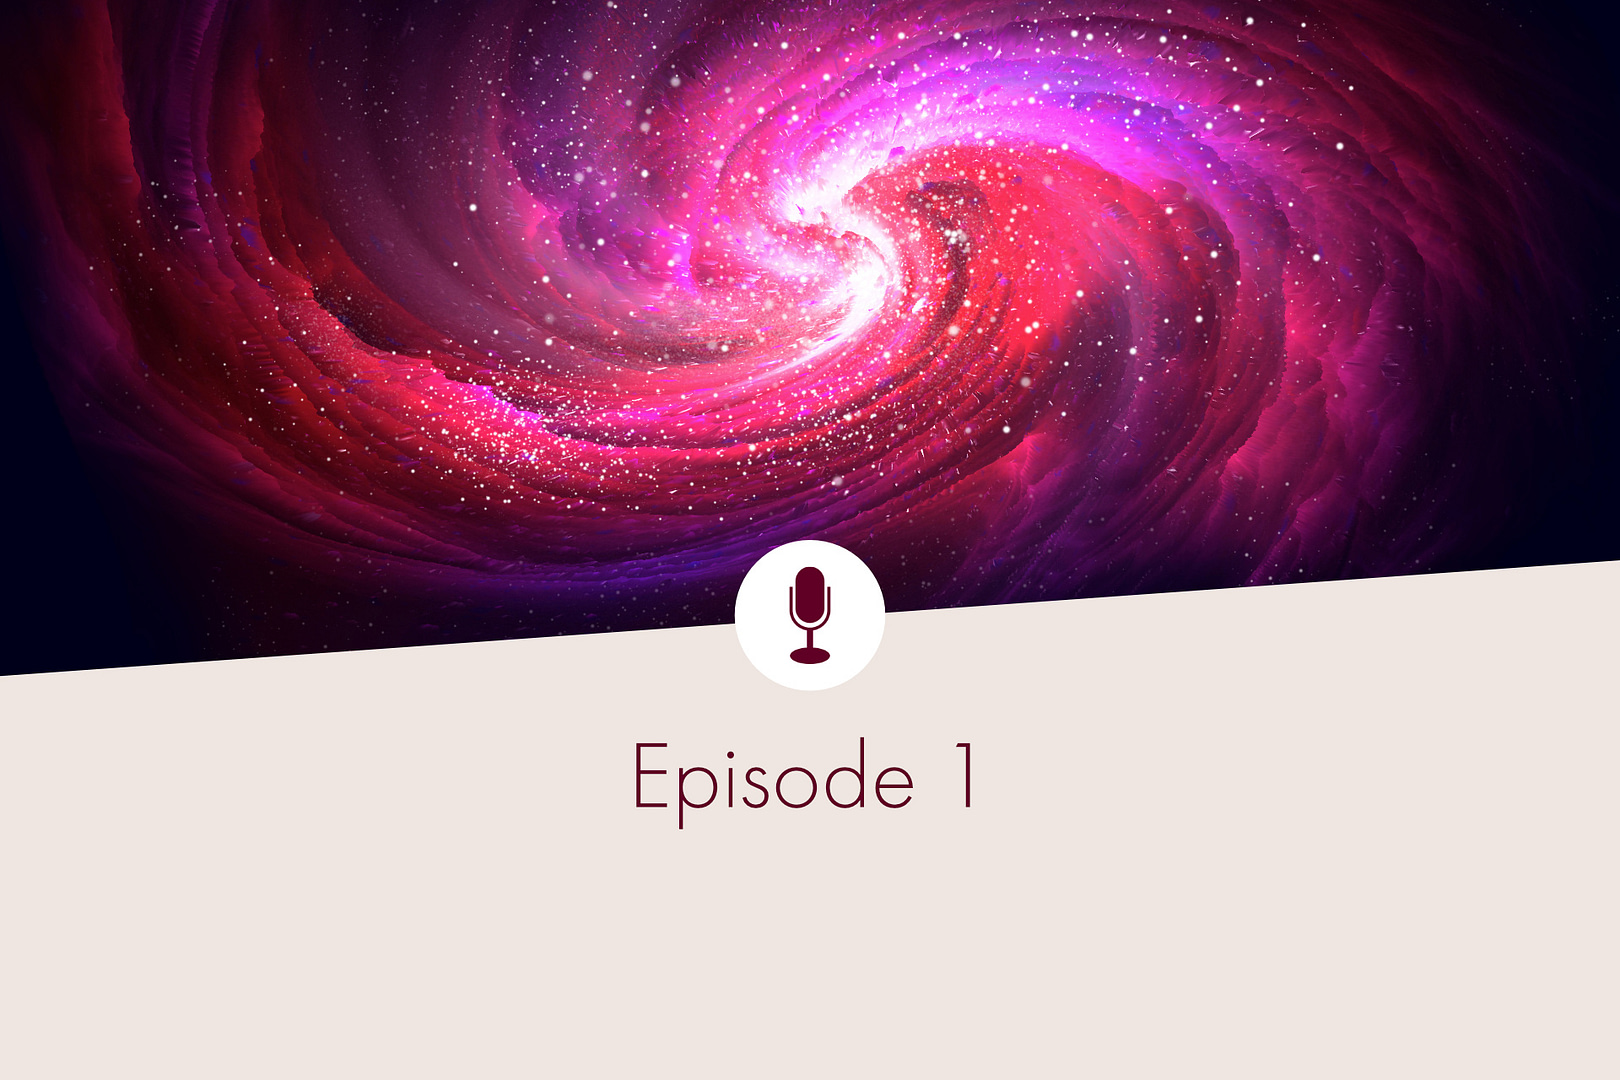 Pink cosmic vortex, captions "Episode 1"